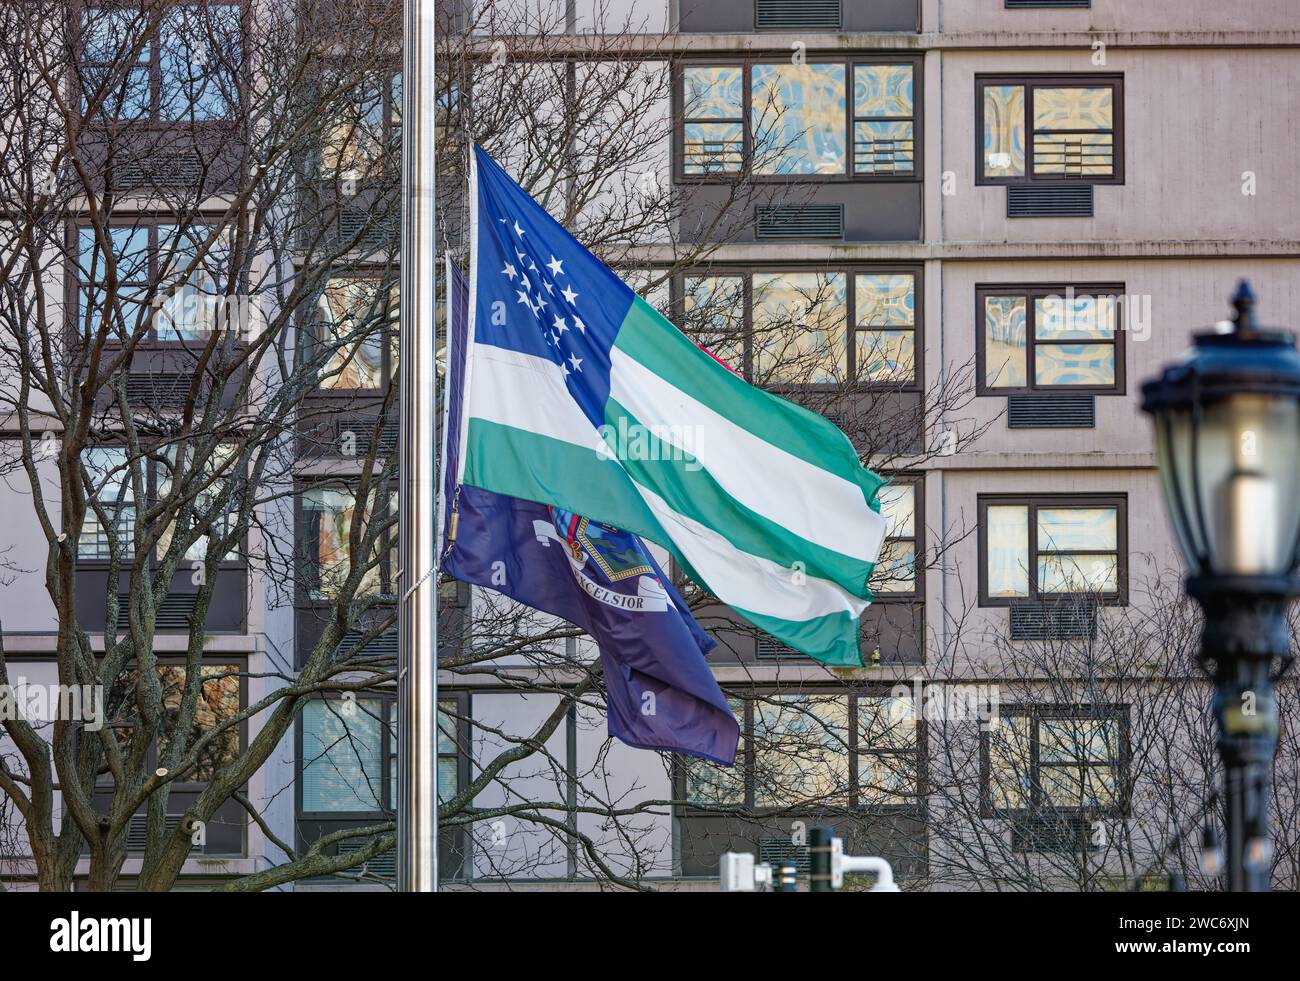 Am New York City Police Memorial in Battery Park City fliegen Flaggen der Vereinigten Staaten, des Bundesstaates New York und des New York City Police Department. Stockfoto